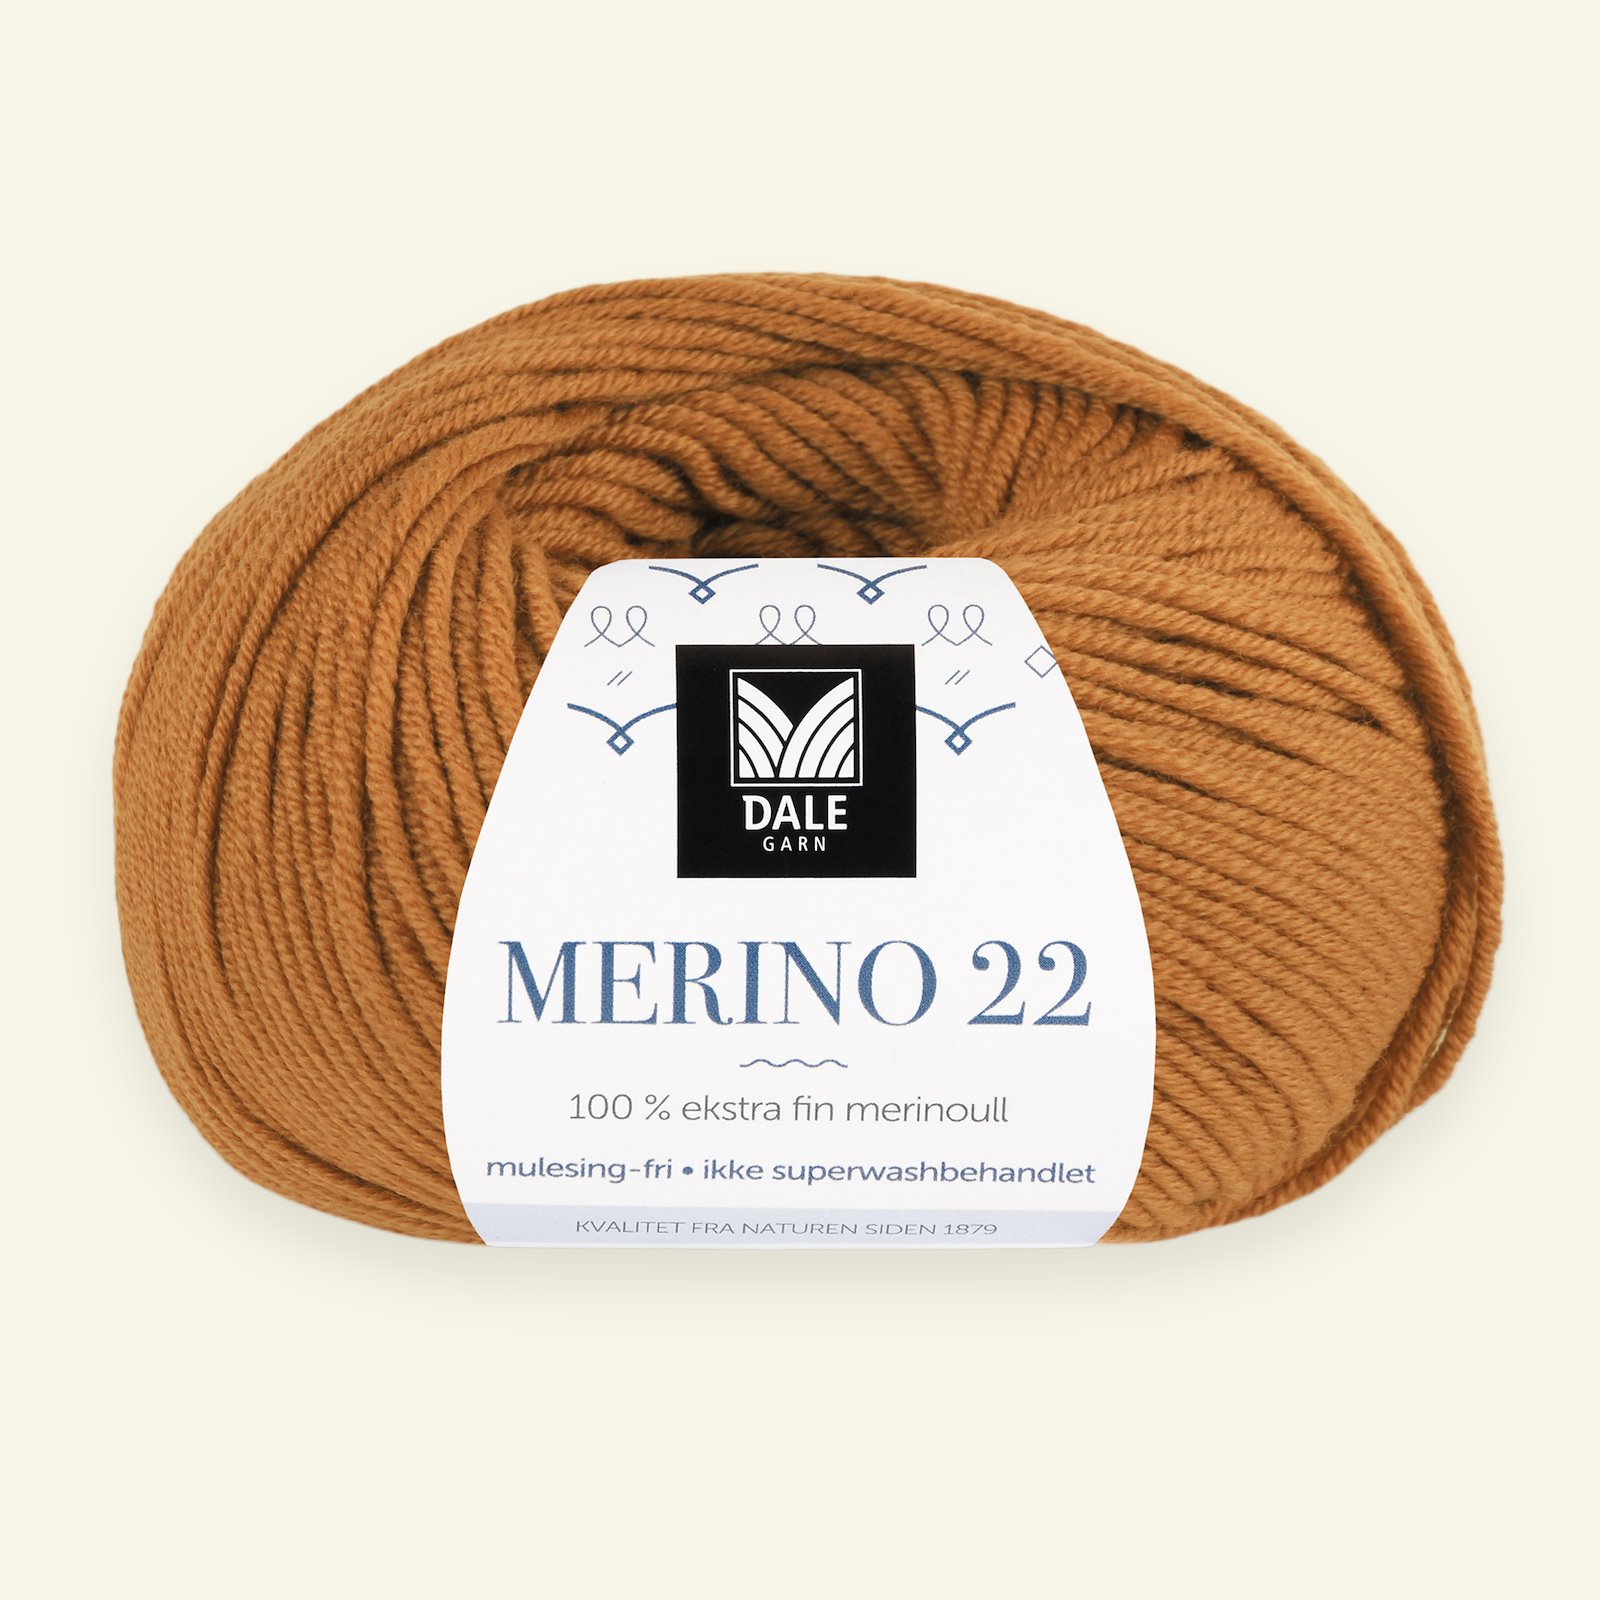 Dale Garn, 100% extra fint merinogarn "Merino 22", bränd orange (2019) 90000380_pack